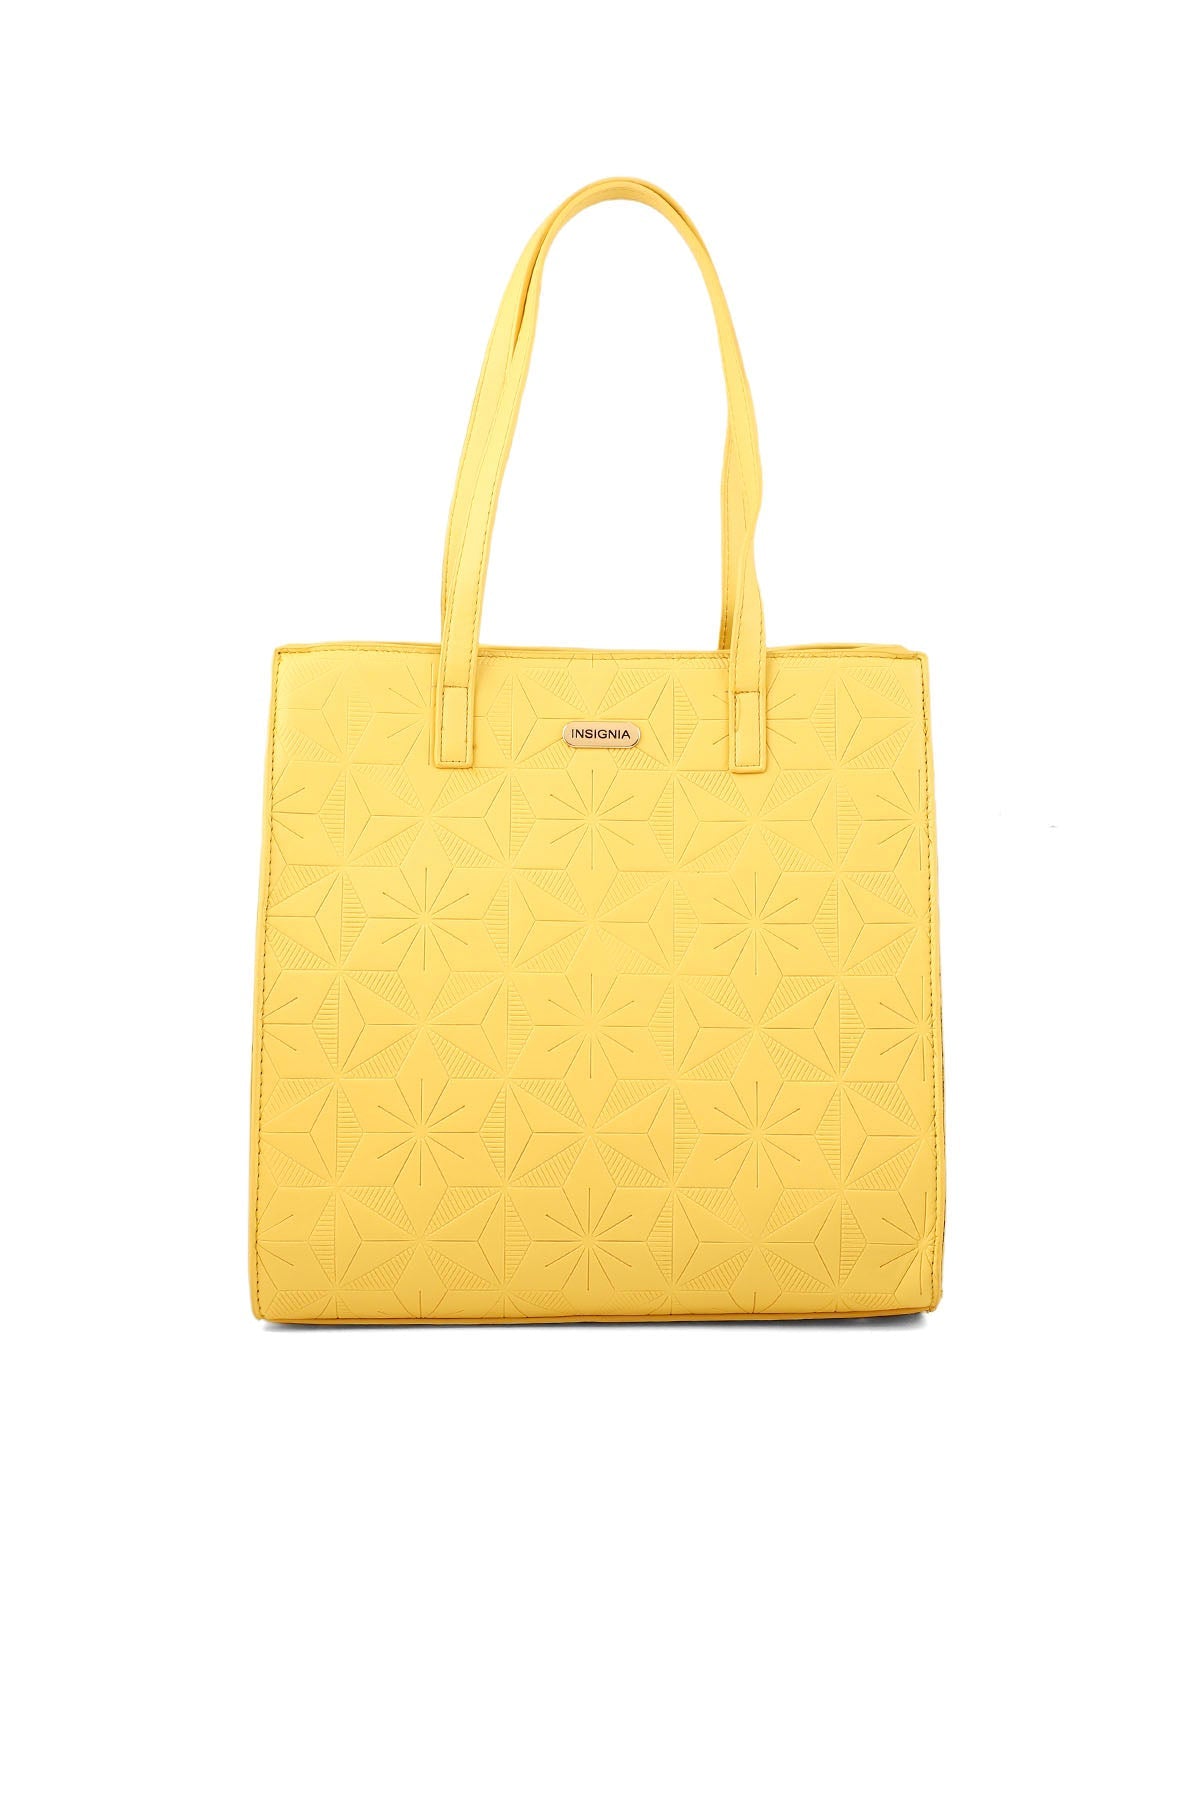 Bucket Hand Bags B15075-Yellow